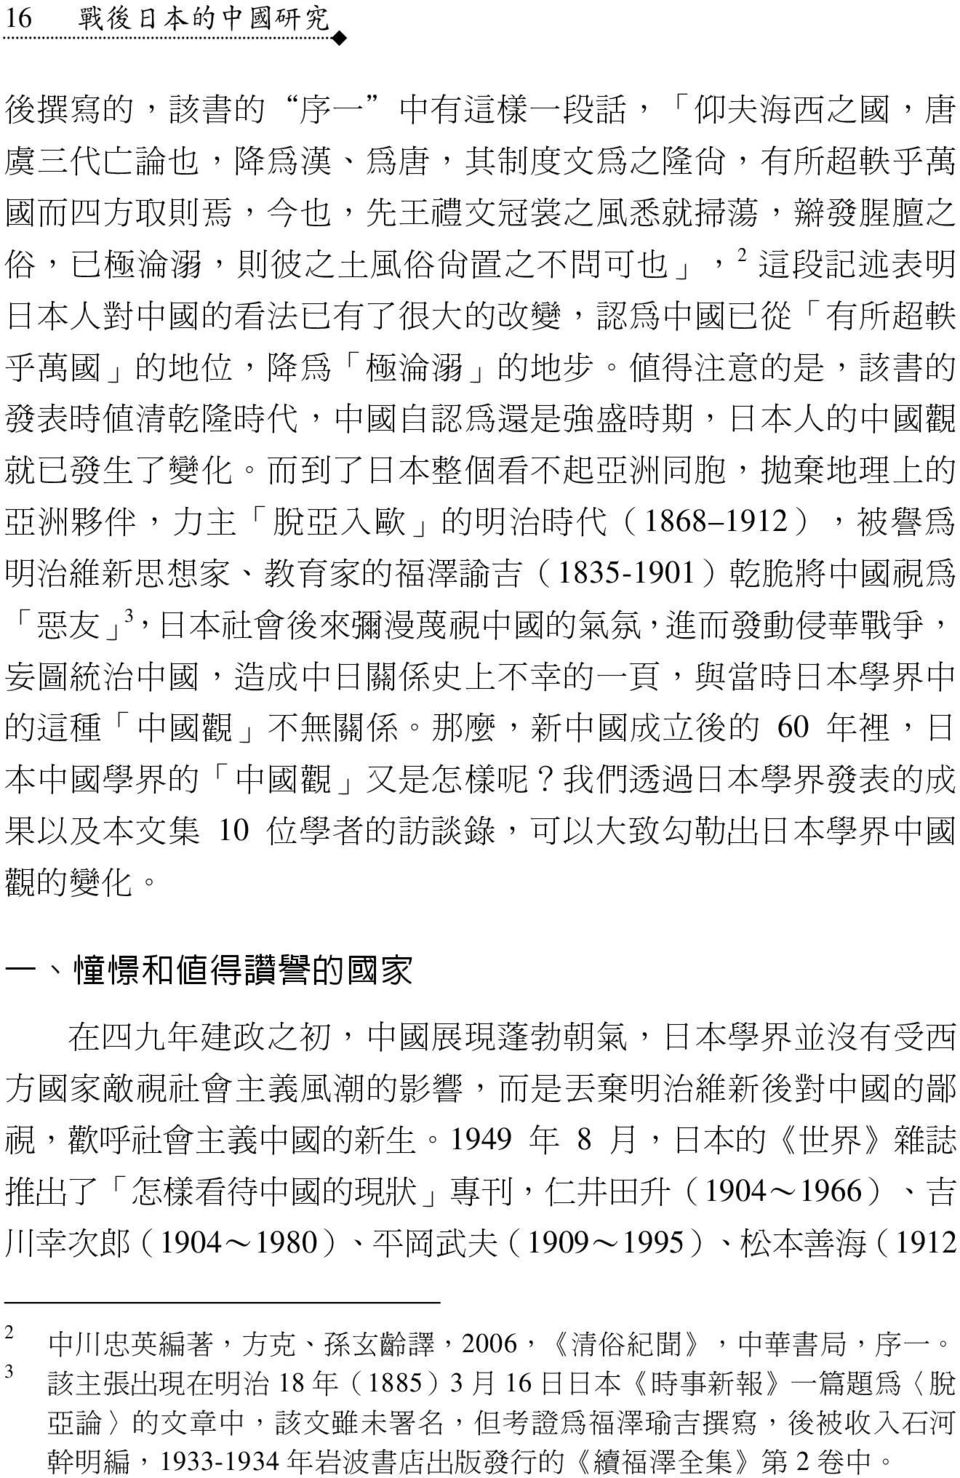 了 變 化 而 到 了 日 本 整 個 看 不 起 亞 洲 同 胞, 拋 棄 地 理 上 的 亞 洲 夥 伴, 力 主 脫 亞 入 歐 的 明 治 時 代 (1868 1912), 被 譽 為 明 治 維 新 思 想 家 教 育 家 的 福 澤 諭 吉 (1835-1901) 乾 脆 將 中 國 視 為 惡 友 3, 日 本 社 會 後 來 彌 漫 蔑 視 中 國 的 氣 氛, 進 而 發 動